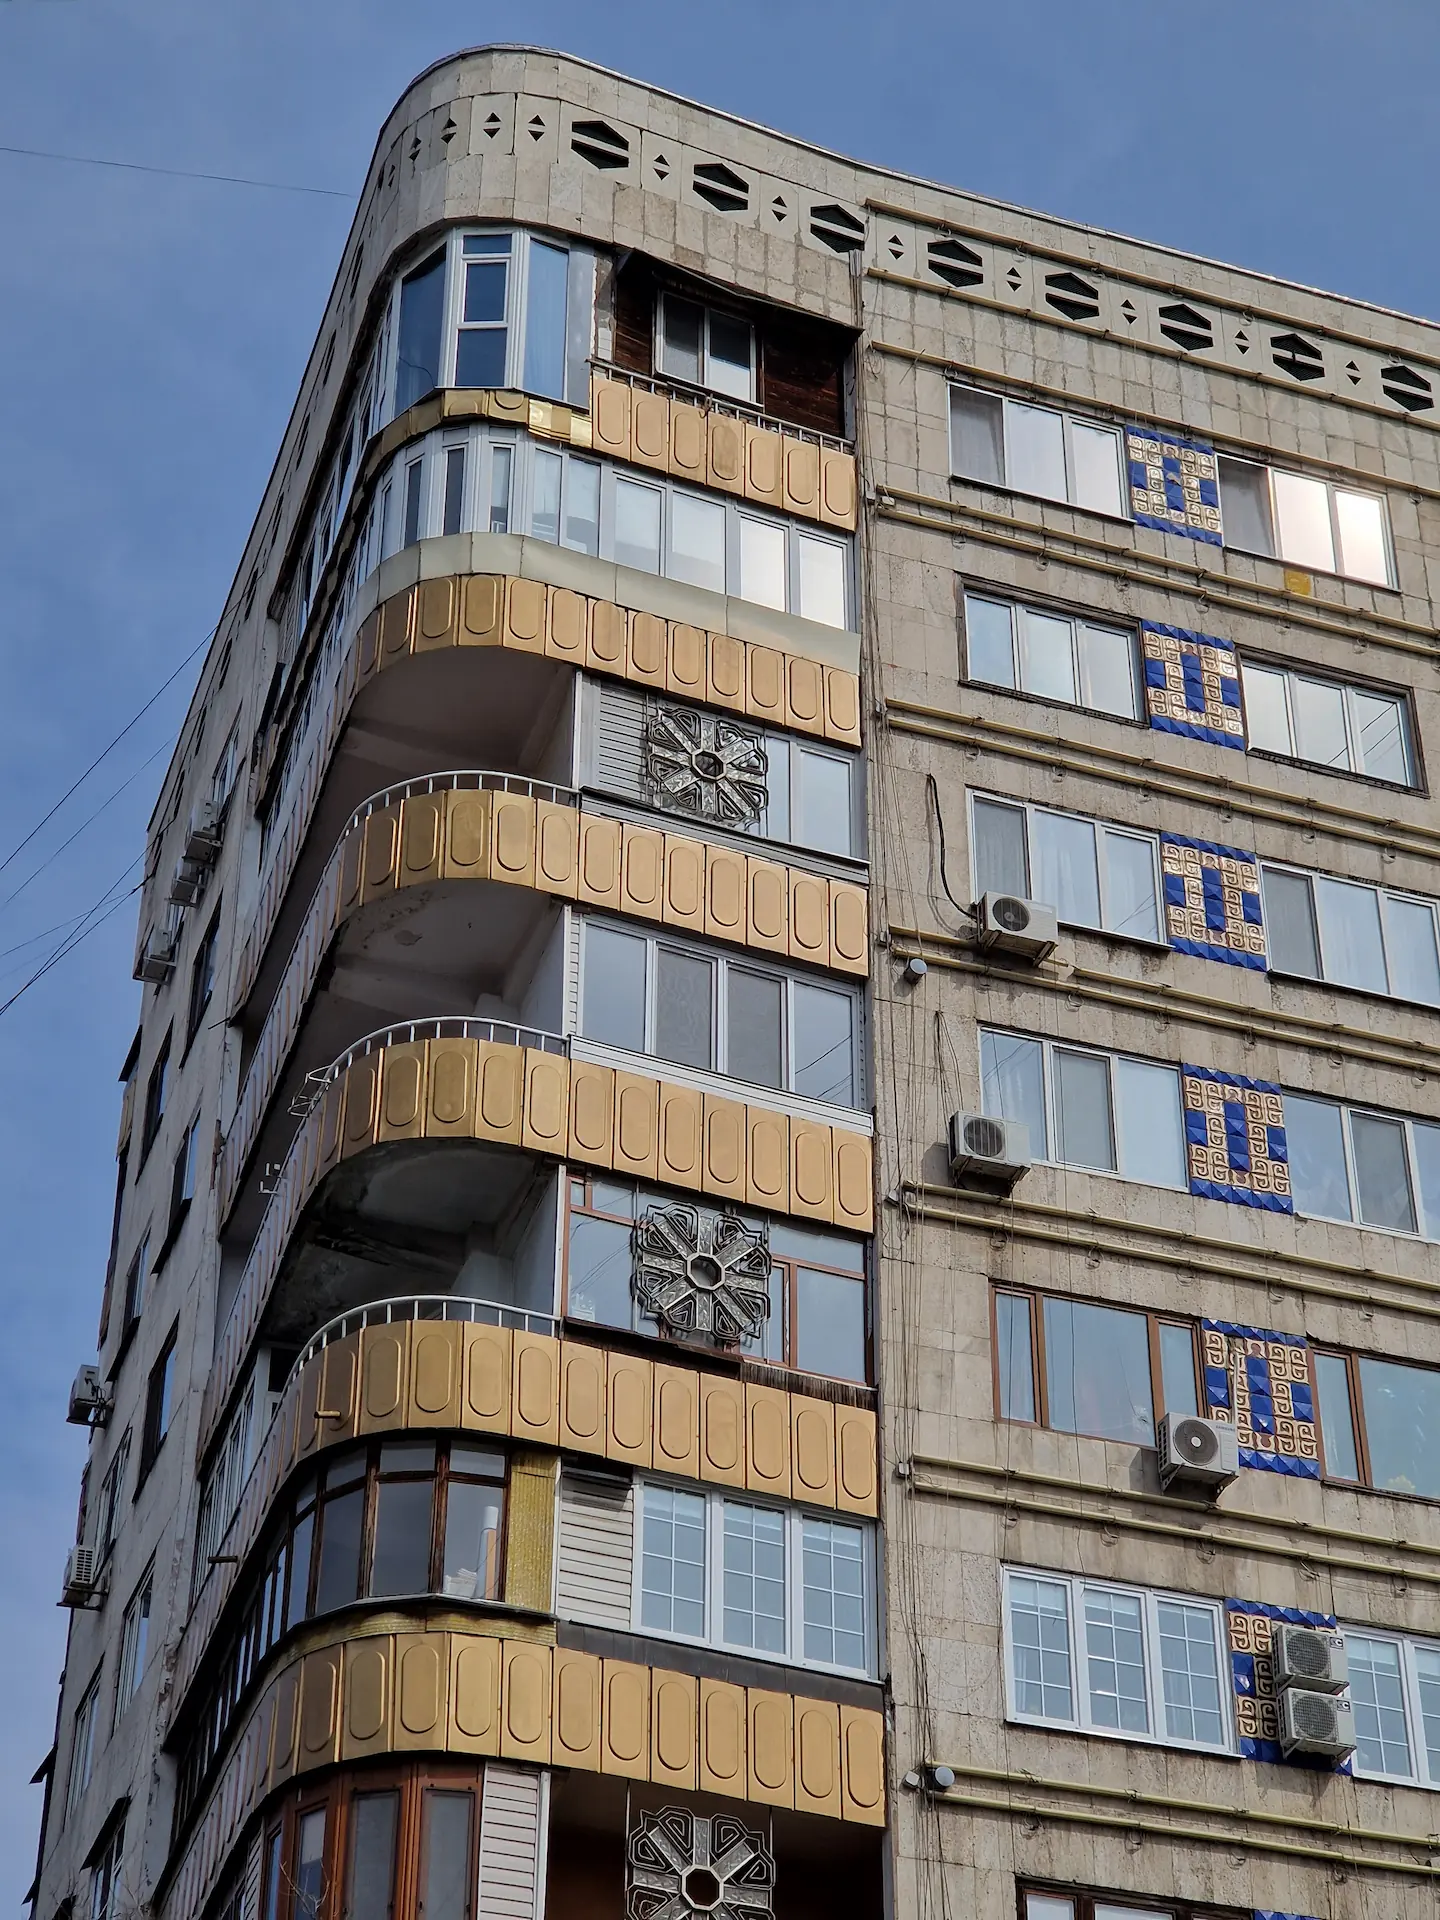 Un grand immeuble avec des balcons arrondis et dorés dans les angles